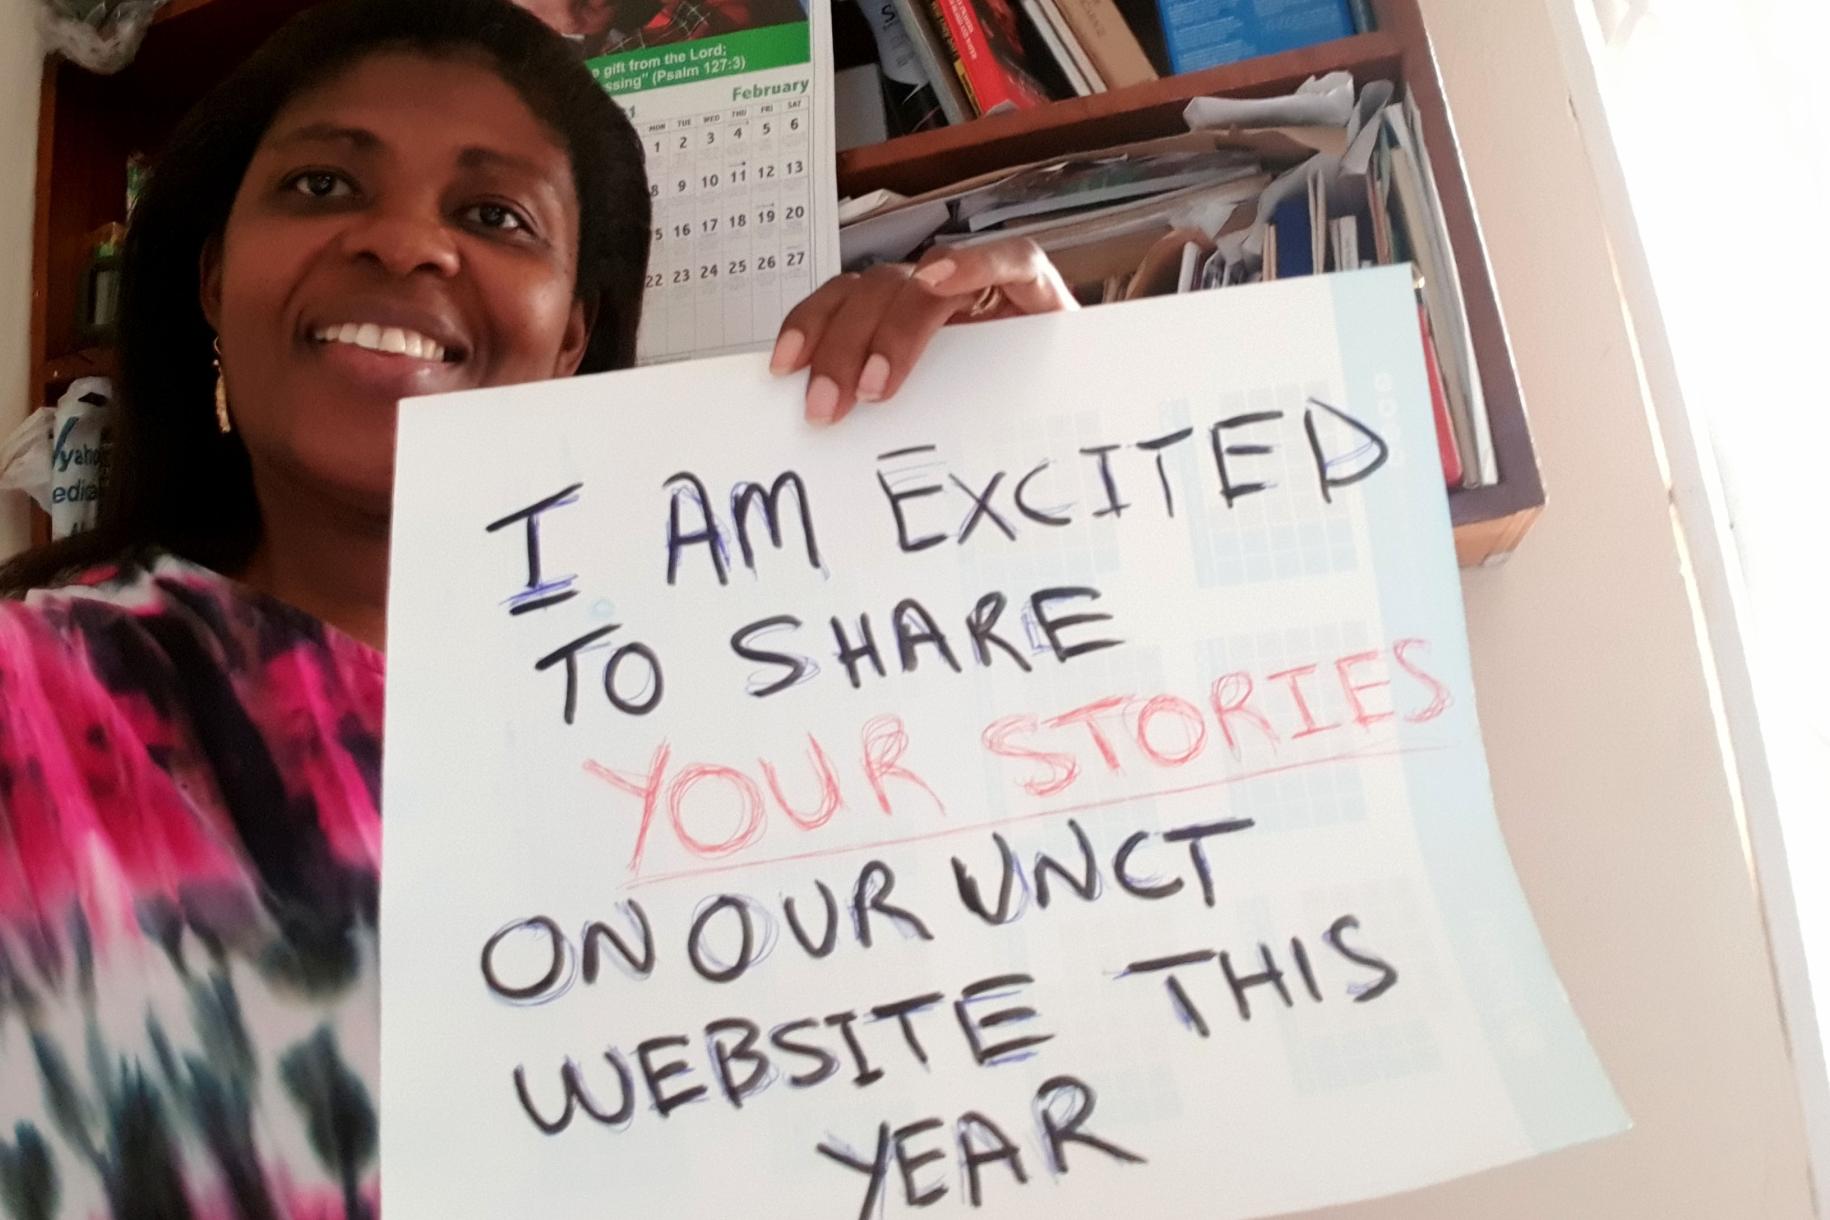 سينثيا براه من مكتب الأمم المتحدة بغانا تحمل لافتة كتب عليها: "أنا متحمسة لمشاركة قصصكم على موقع فريق الأمم المتحدة القطري هذا العام!"